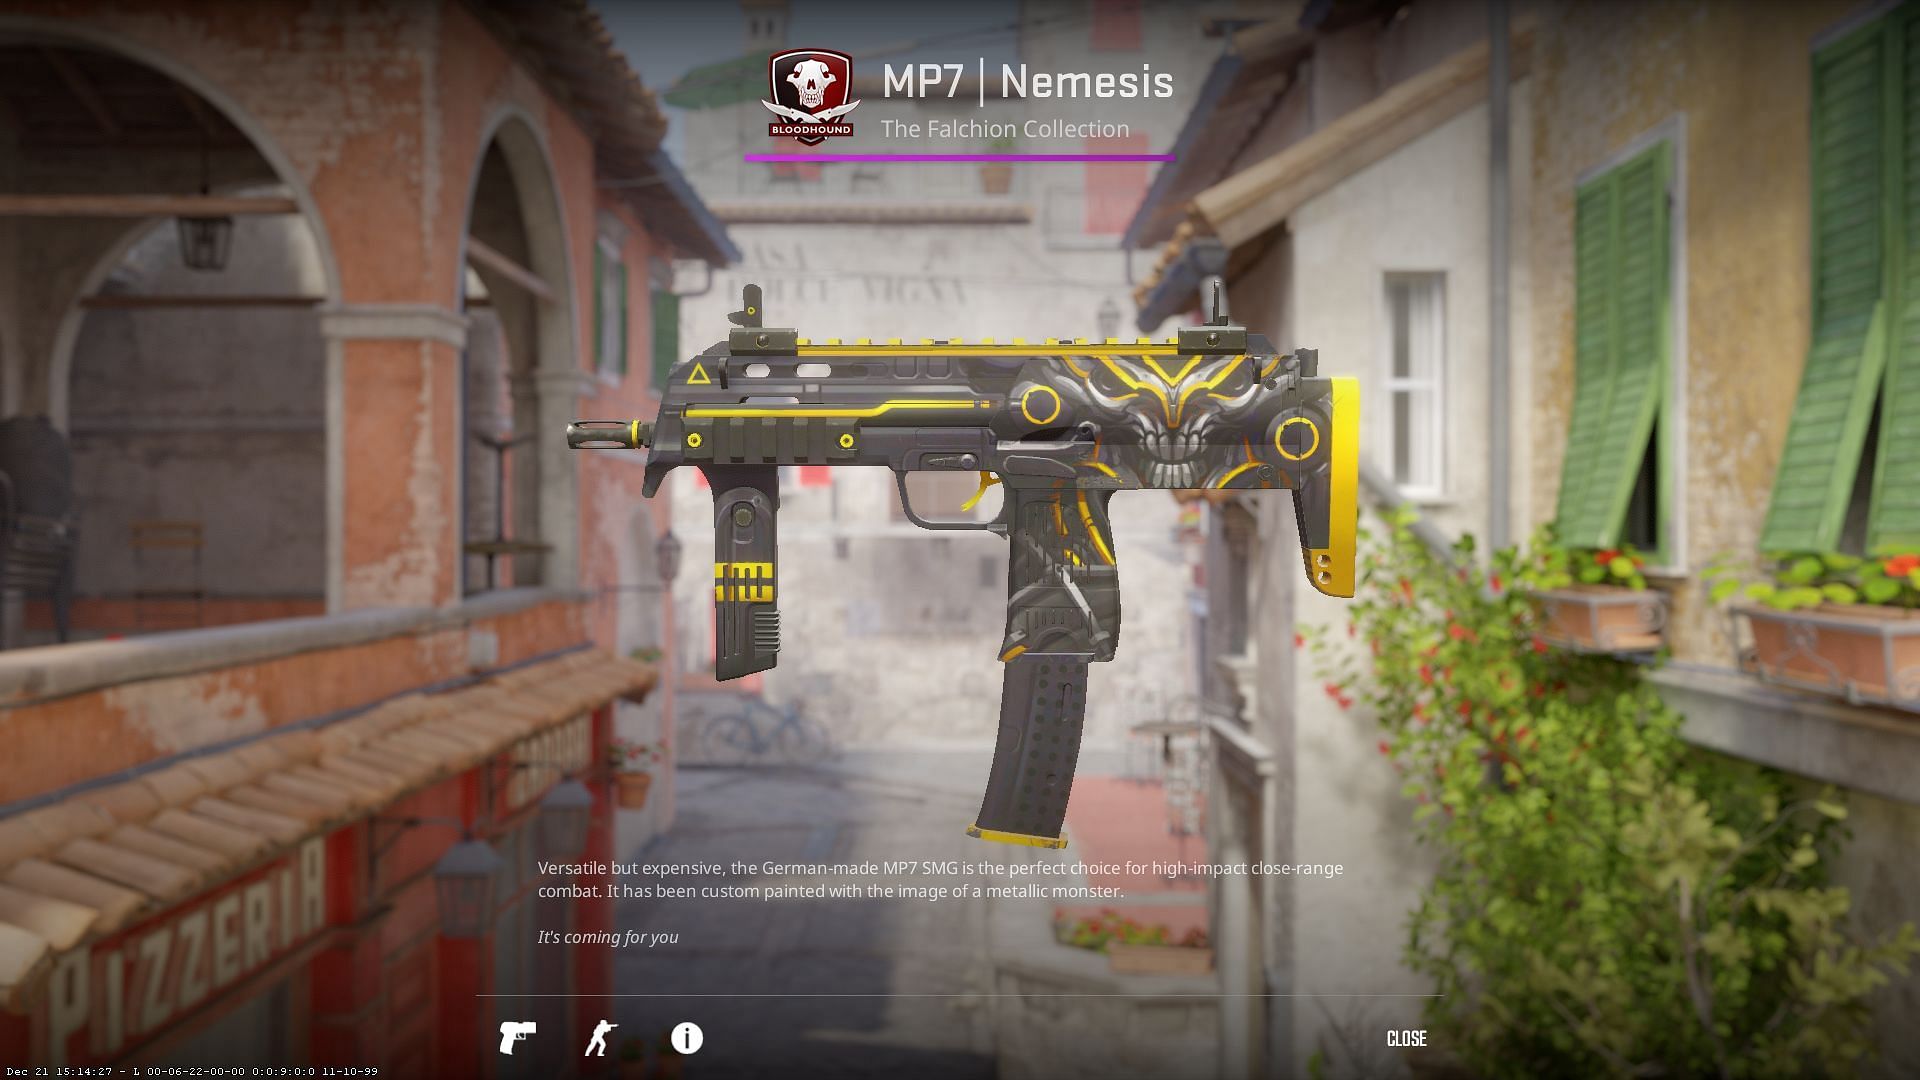 MP7 Nemesis (Image via Valve)